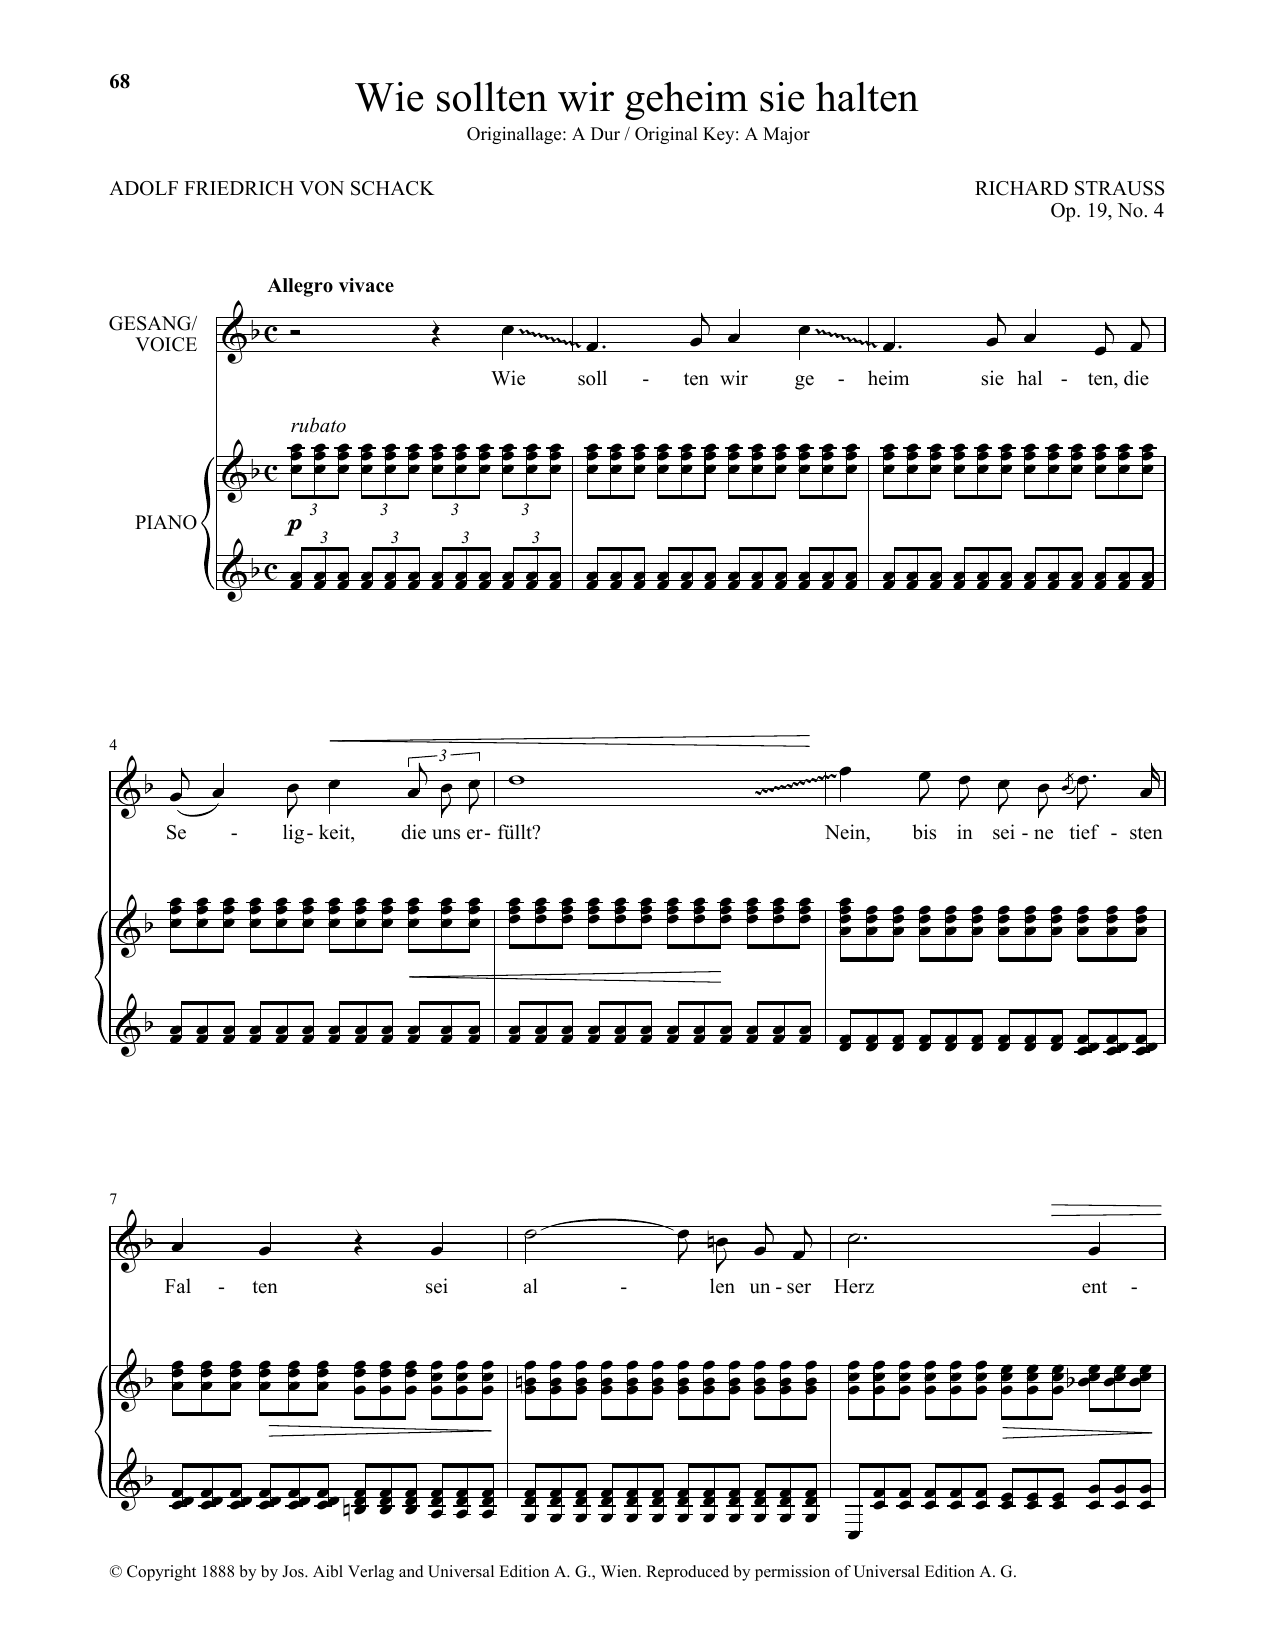 Richard Strauss Wie Sollten Wir Geheim Sie Halten (Low Voice) Sheet Music Notes & Chords for Piano & Vocal - Download or Print PDF